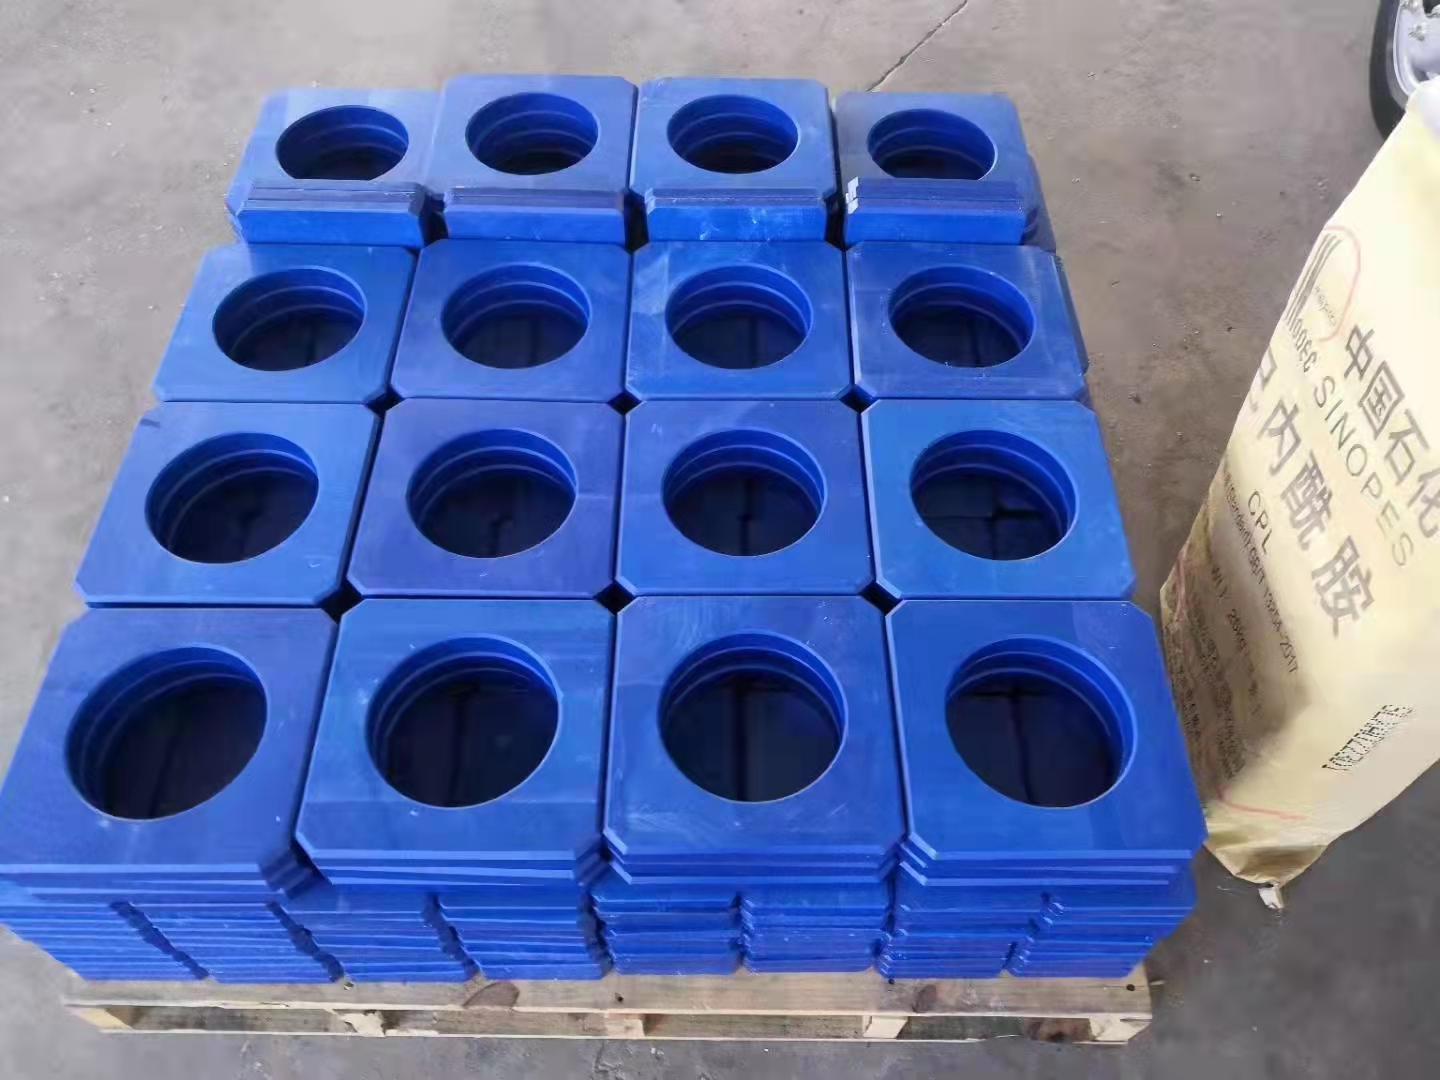 Hiina insenertehniline tipptasemel tugevast puhtast nailonist plastikust varras ja varras nailontoru nailonäärik plastikäärik